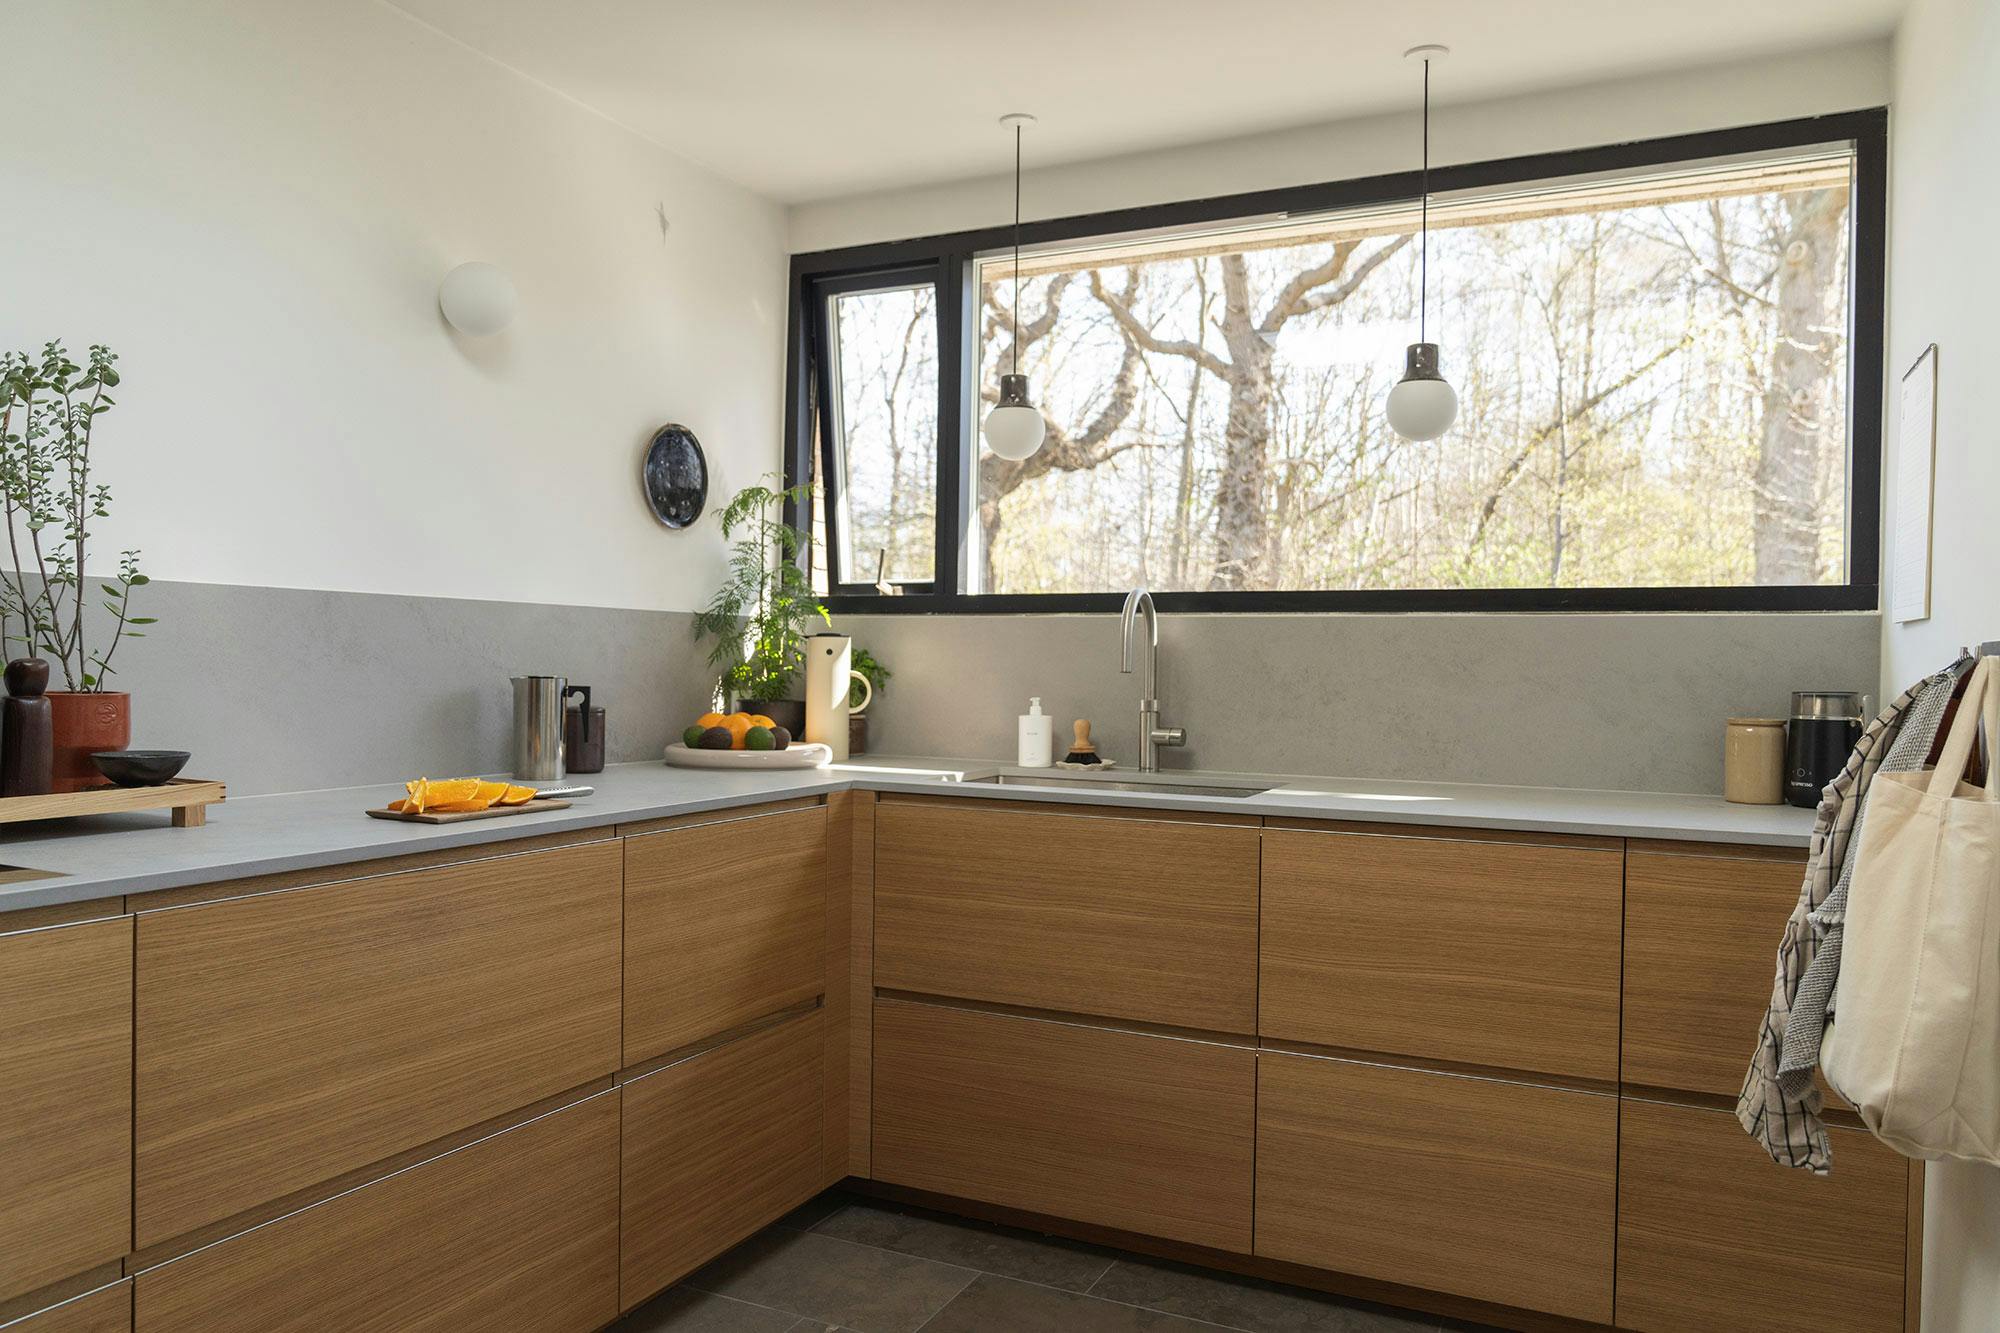 Bildnummer 46 des aktuellen Abschnitts von An ‘eco-chic’ kitchen with the naturalness of Silestone as its key feature von Cosentino Deutschland